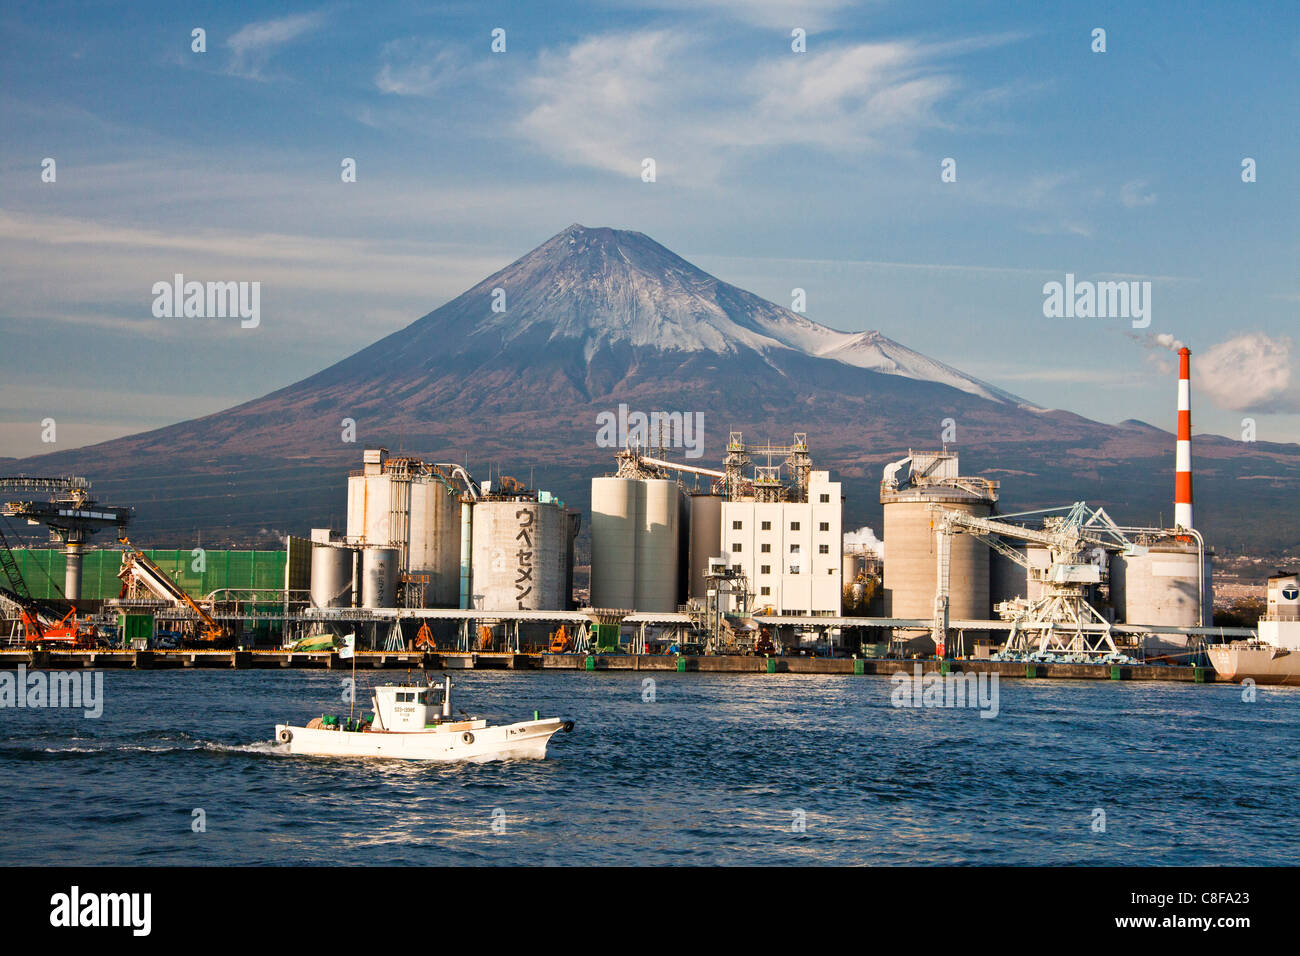 Japón, Noviembre, Asia, Fuji, ciudad, pueblo, ciudad, Fuji, el puerto, el puerto, el monte Fuji, la montaña, el barco, el arreglo del puerto, industria Foto de stock